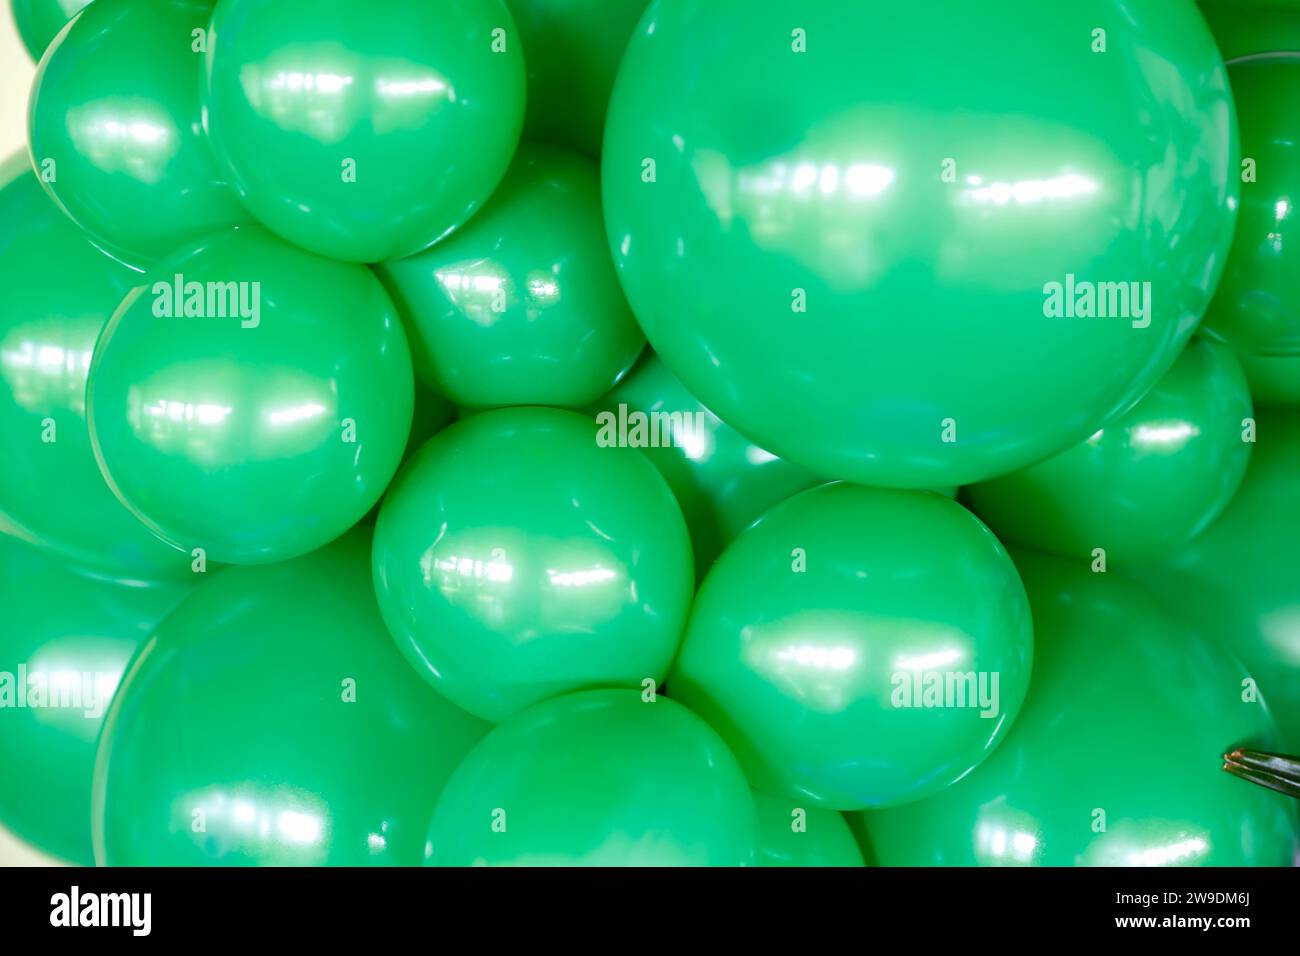 Bunte Ballons im Hintergrund - Geburtstagsparty für Kinder in kräftigen Farben Stockfoto